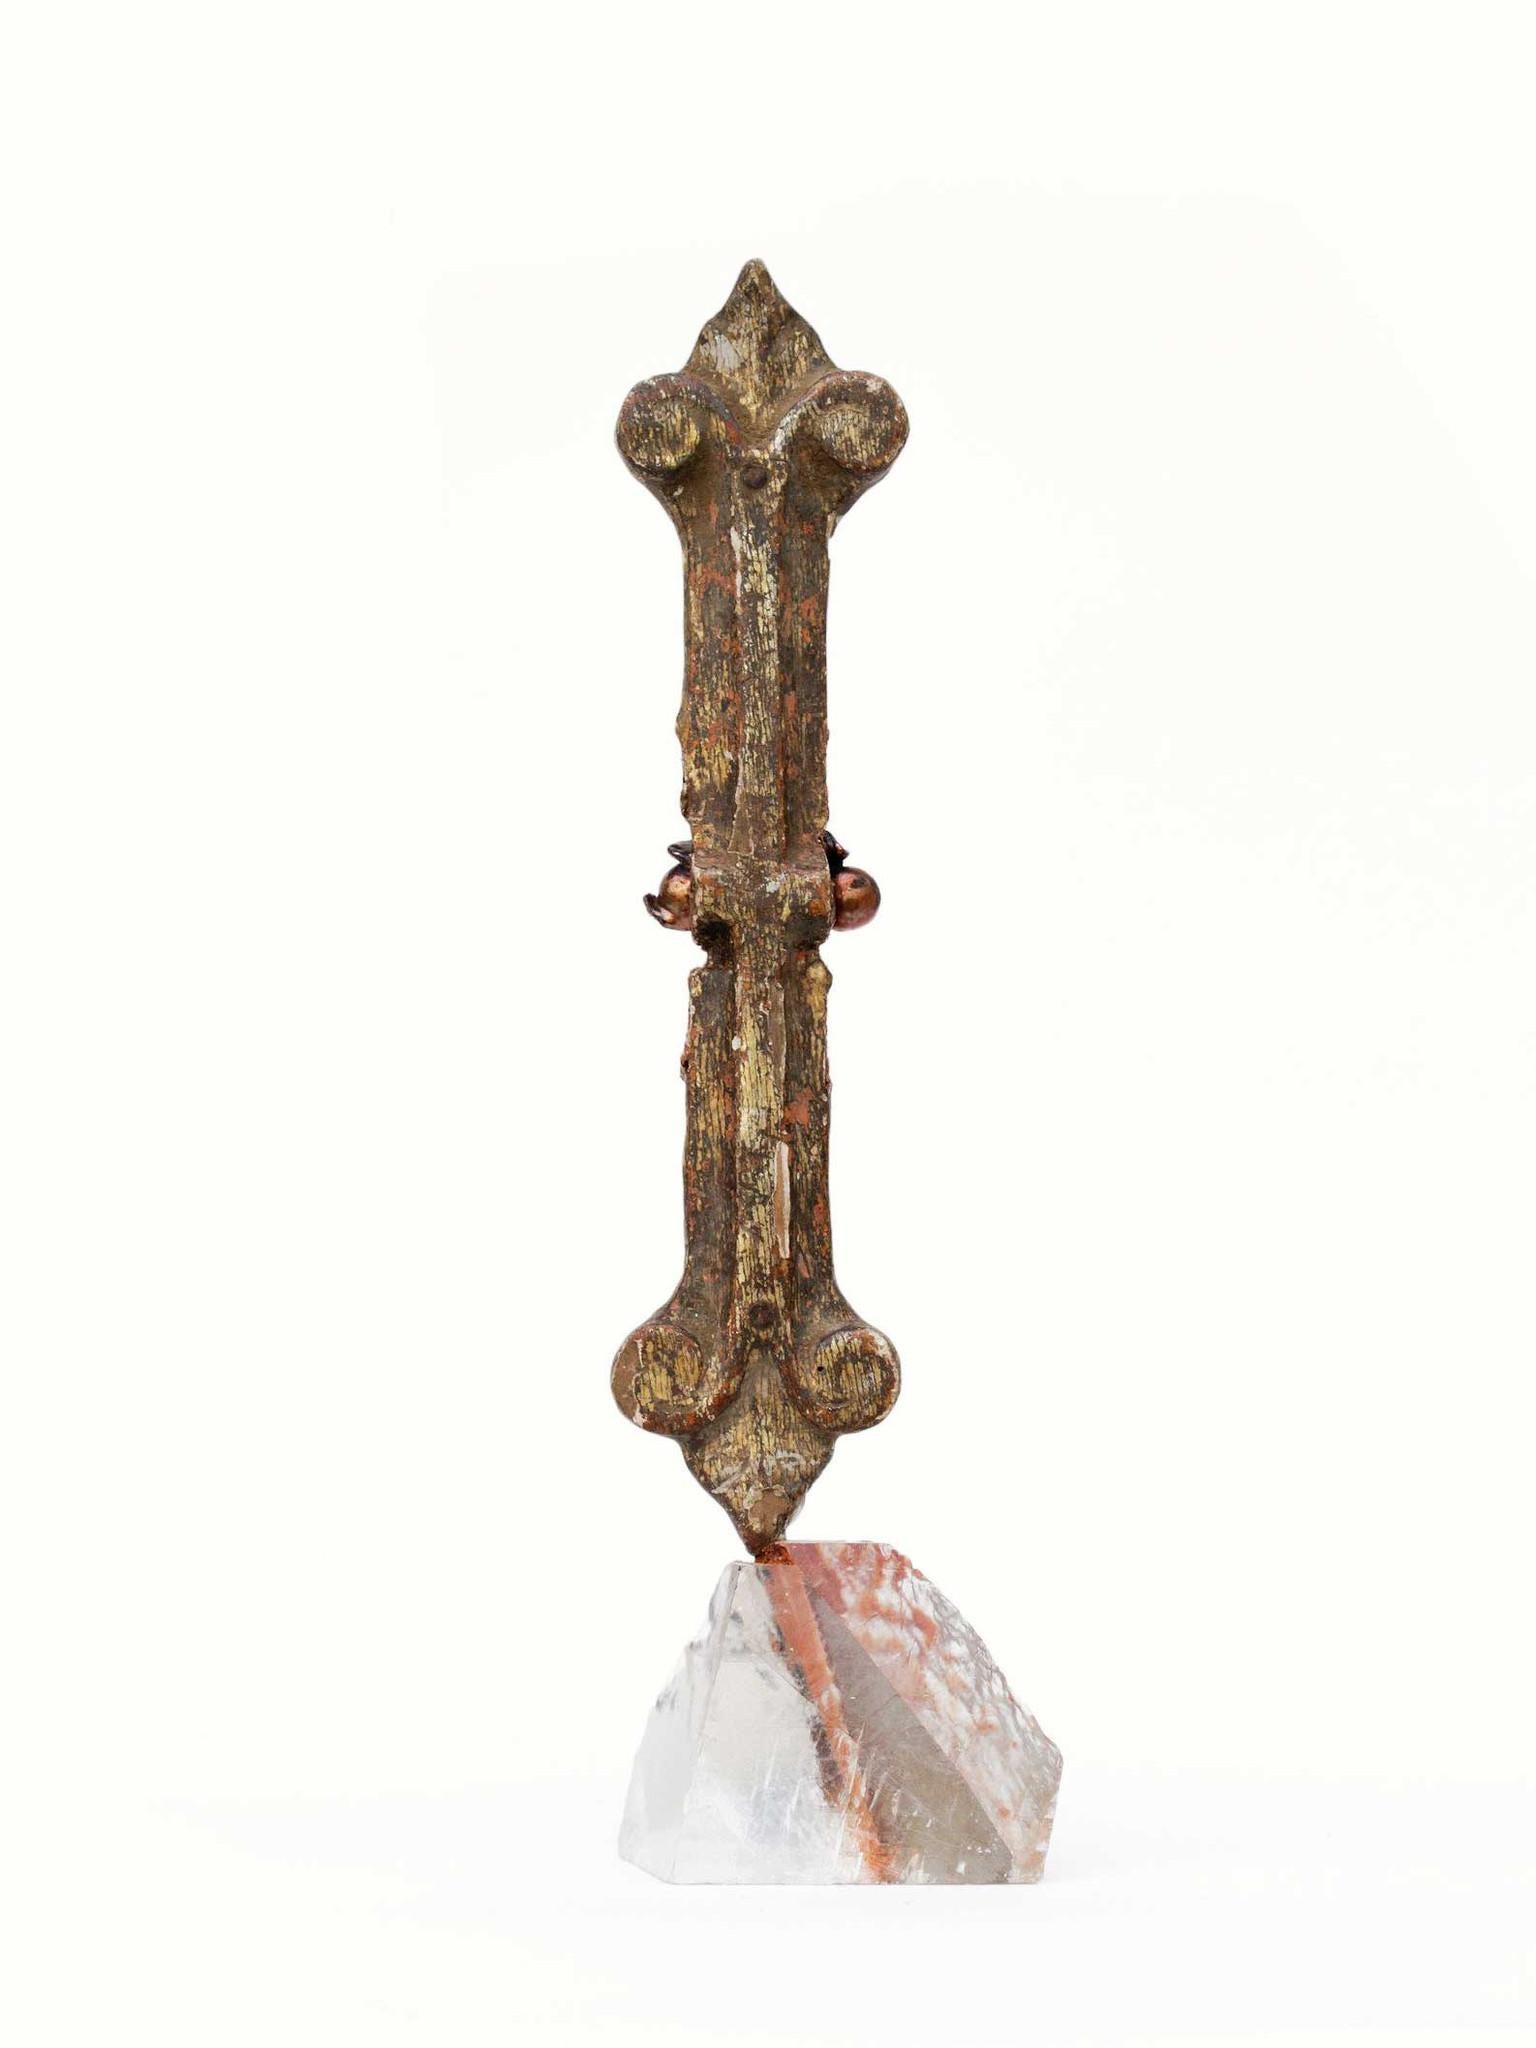 Fragment italien du 18e siècle orné de perles baroques et monté sur une base en calcite optique. Le fragment provenait à l'origine d'une église historique en Italie. Il est orné de perles baroques de formation naturelle.

L'œuvre est réalisée par